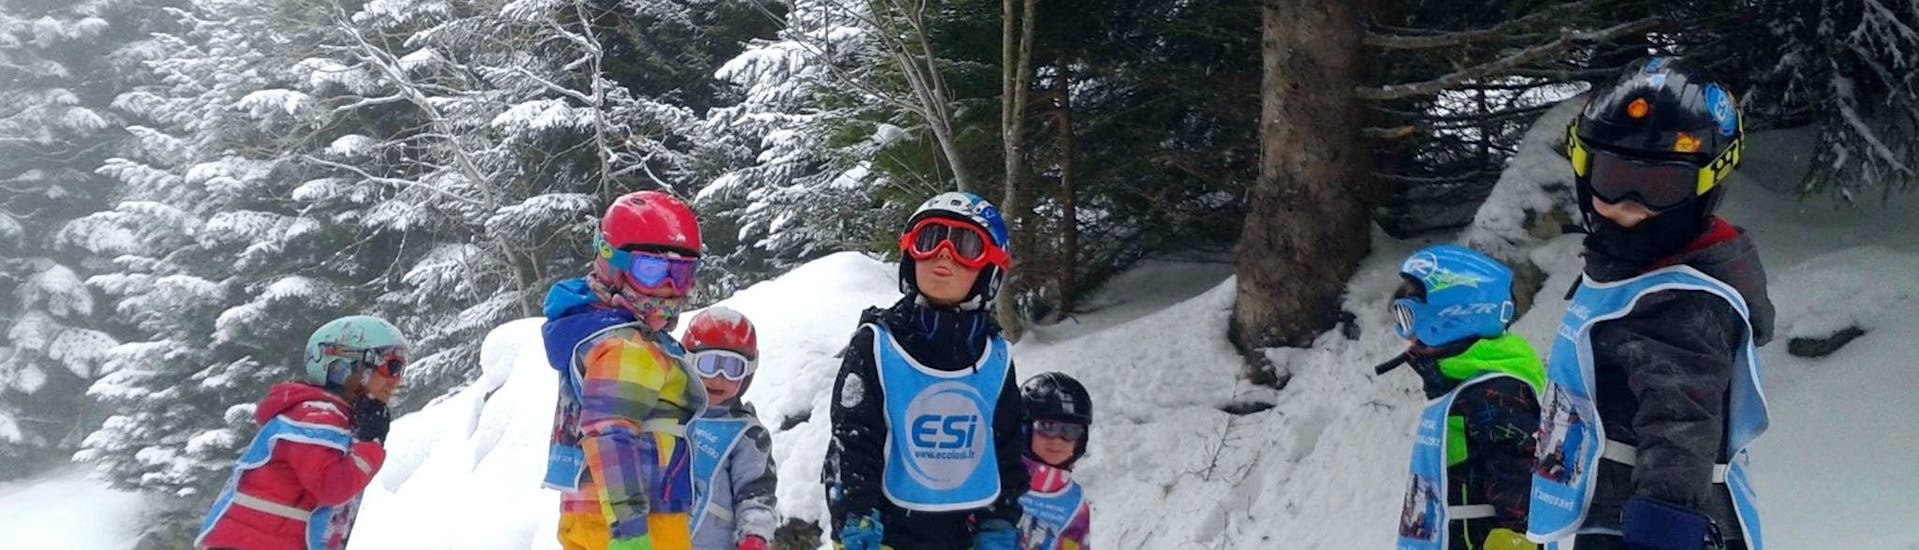 Los niños están parados en medio de las pistas rodeados de árboles durante sus clases de esquí para niños (3-15 años) - Fin de Semana con la escuela de esquí ESI Ecoloski Barèges.